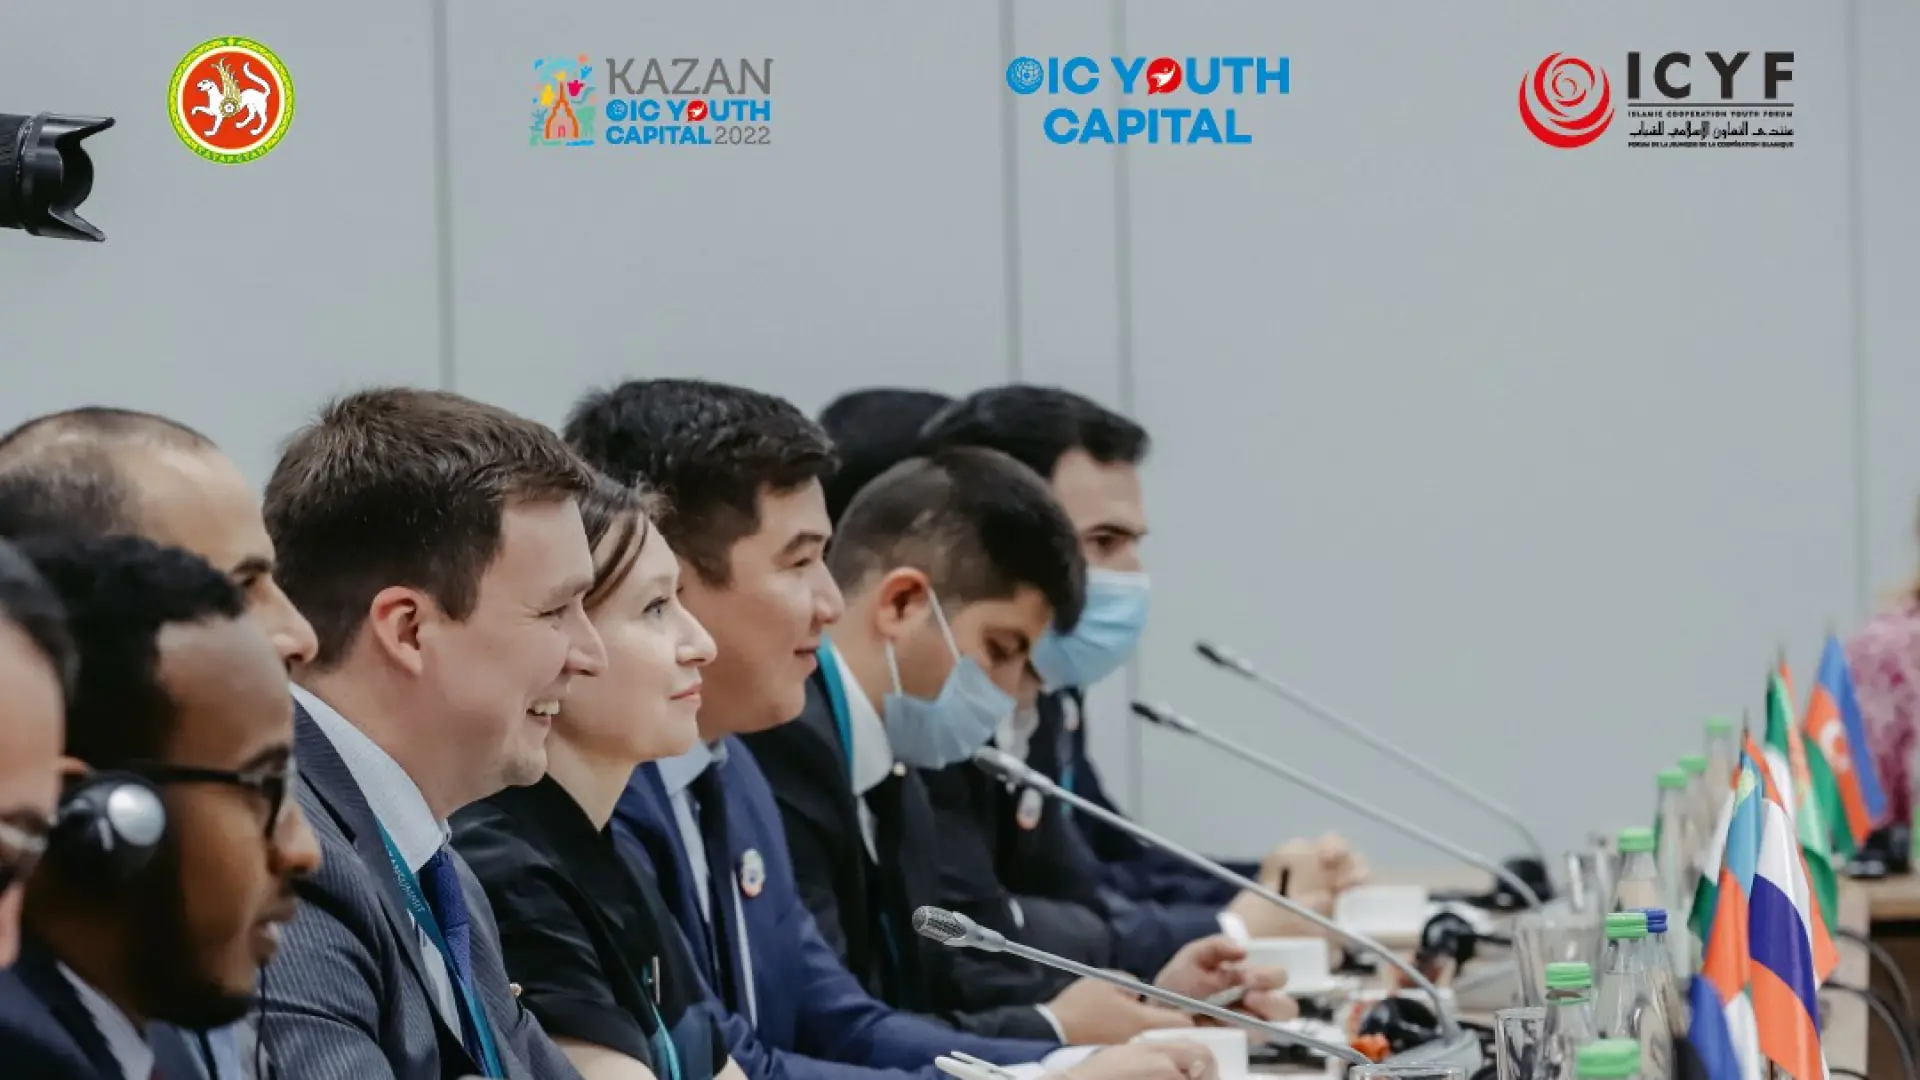 Yetakchilik qobiliyatiga ega yoshlar uchun toʻliq moliyalashtiriladigan 3 kunlik Kazan Global Youth Summit dasturi